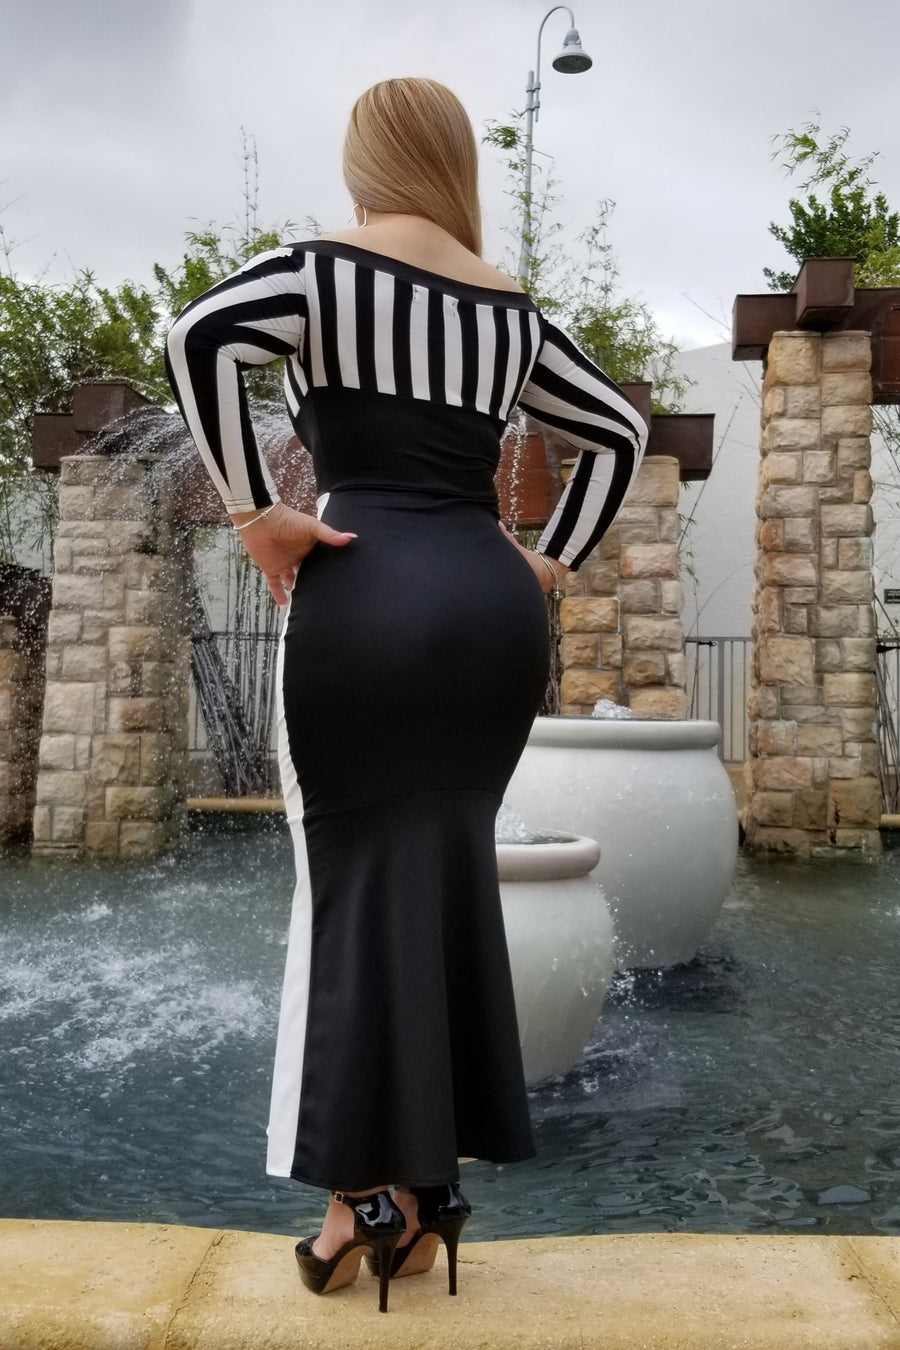 Zebra Dress Small / Black & White Trending